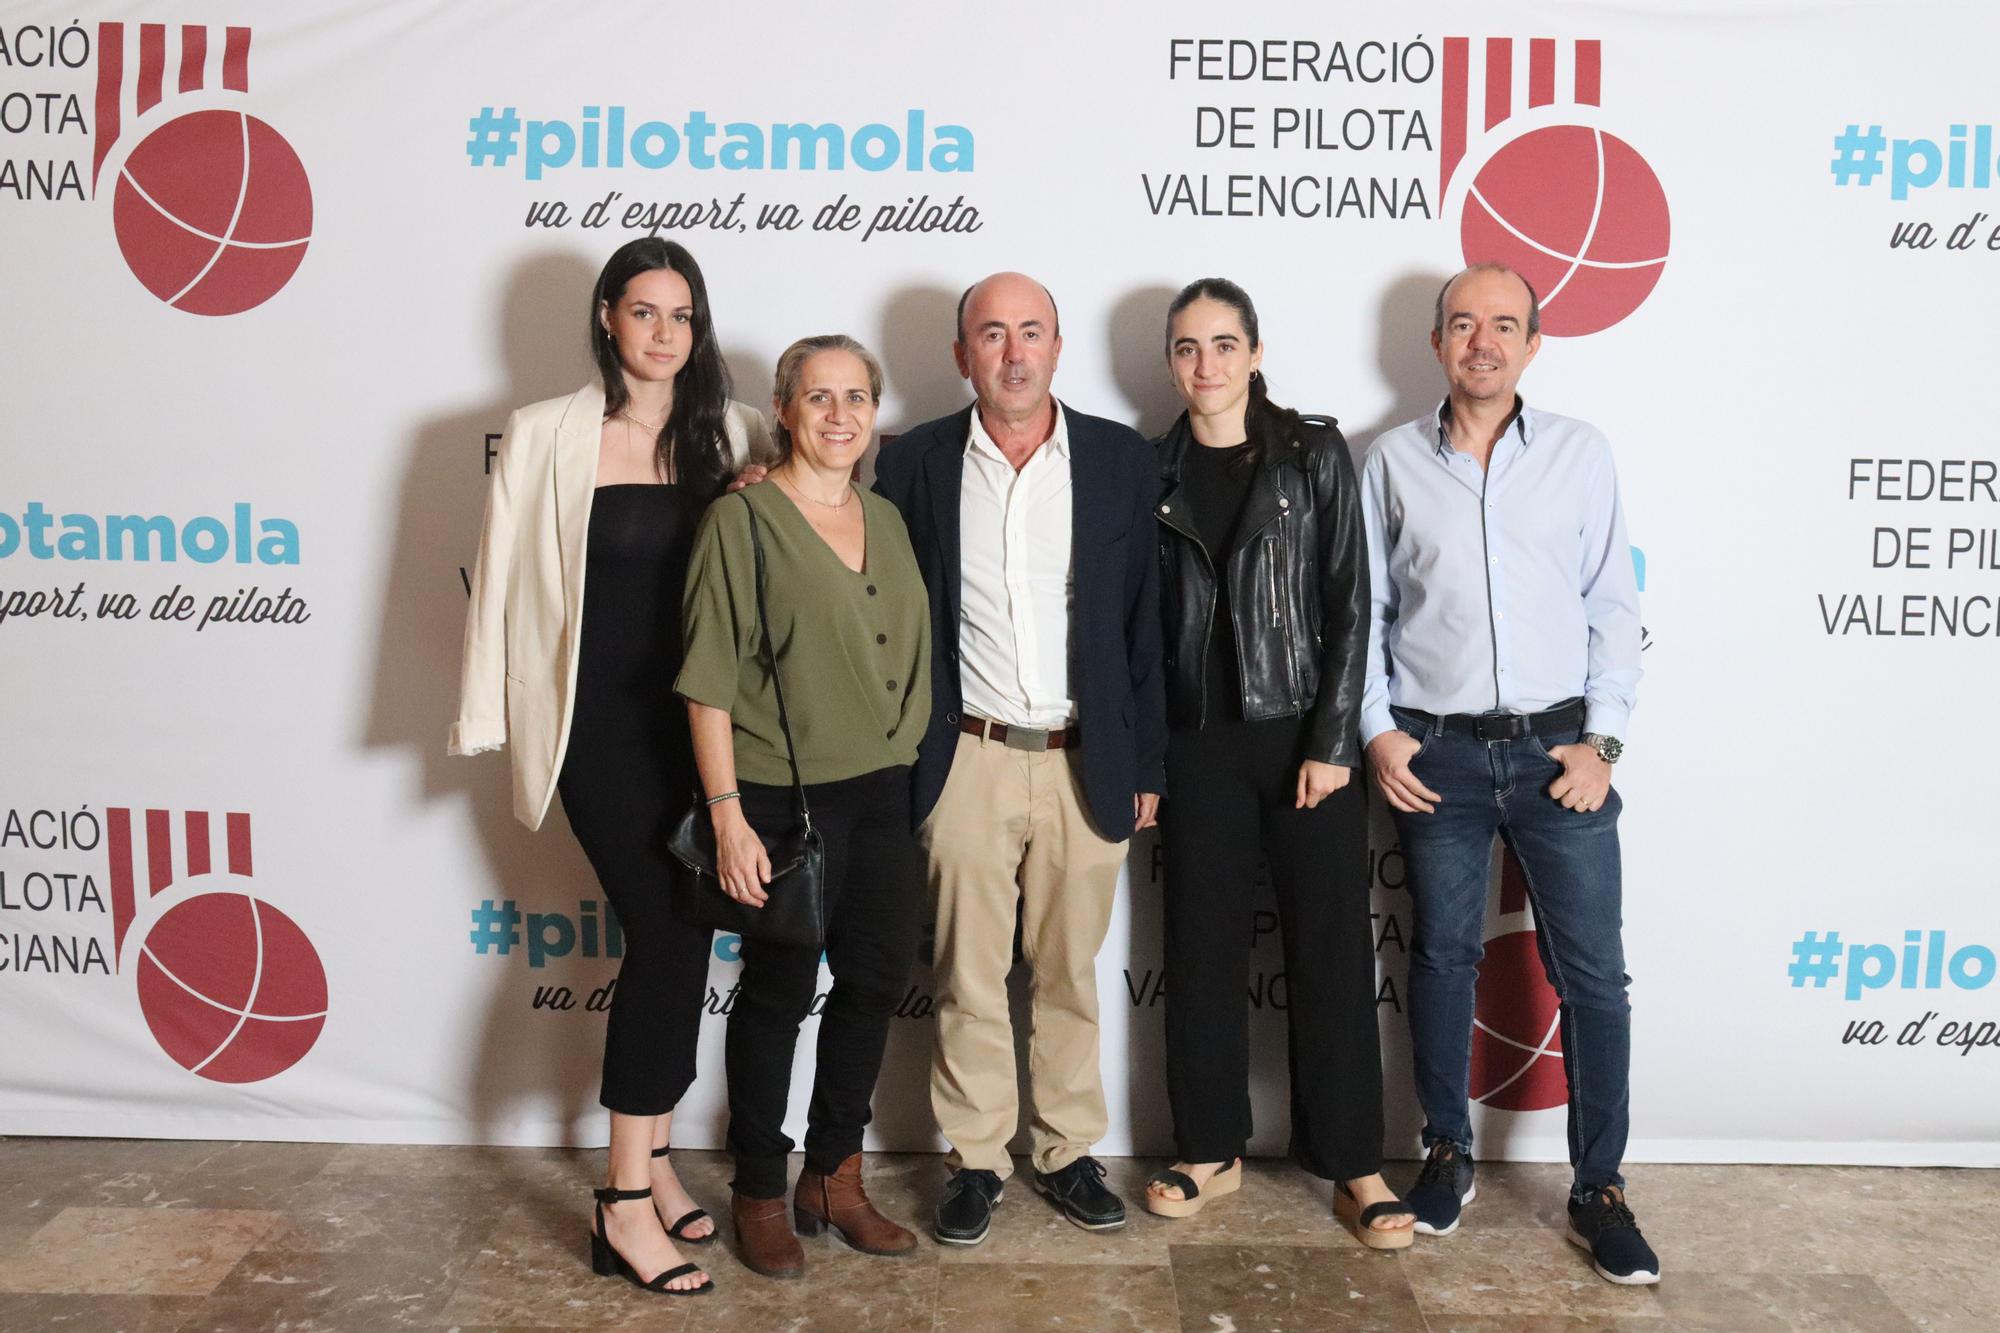 FOTO 14 - Victoria Díez, amb la seua família.JPG